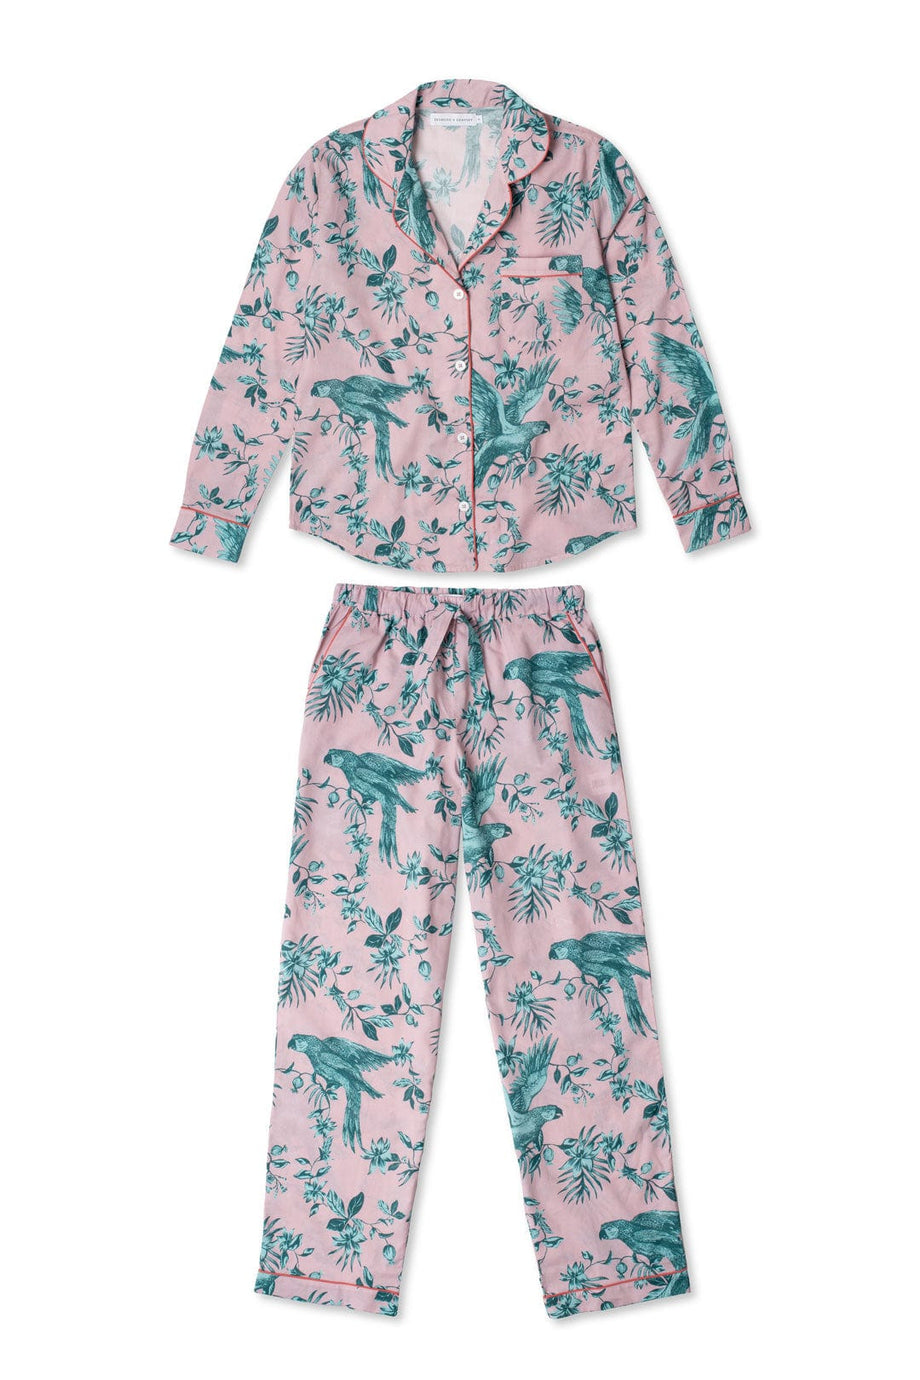 Long Pyjama Set The Bromley Parrot Pink/Blue